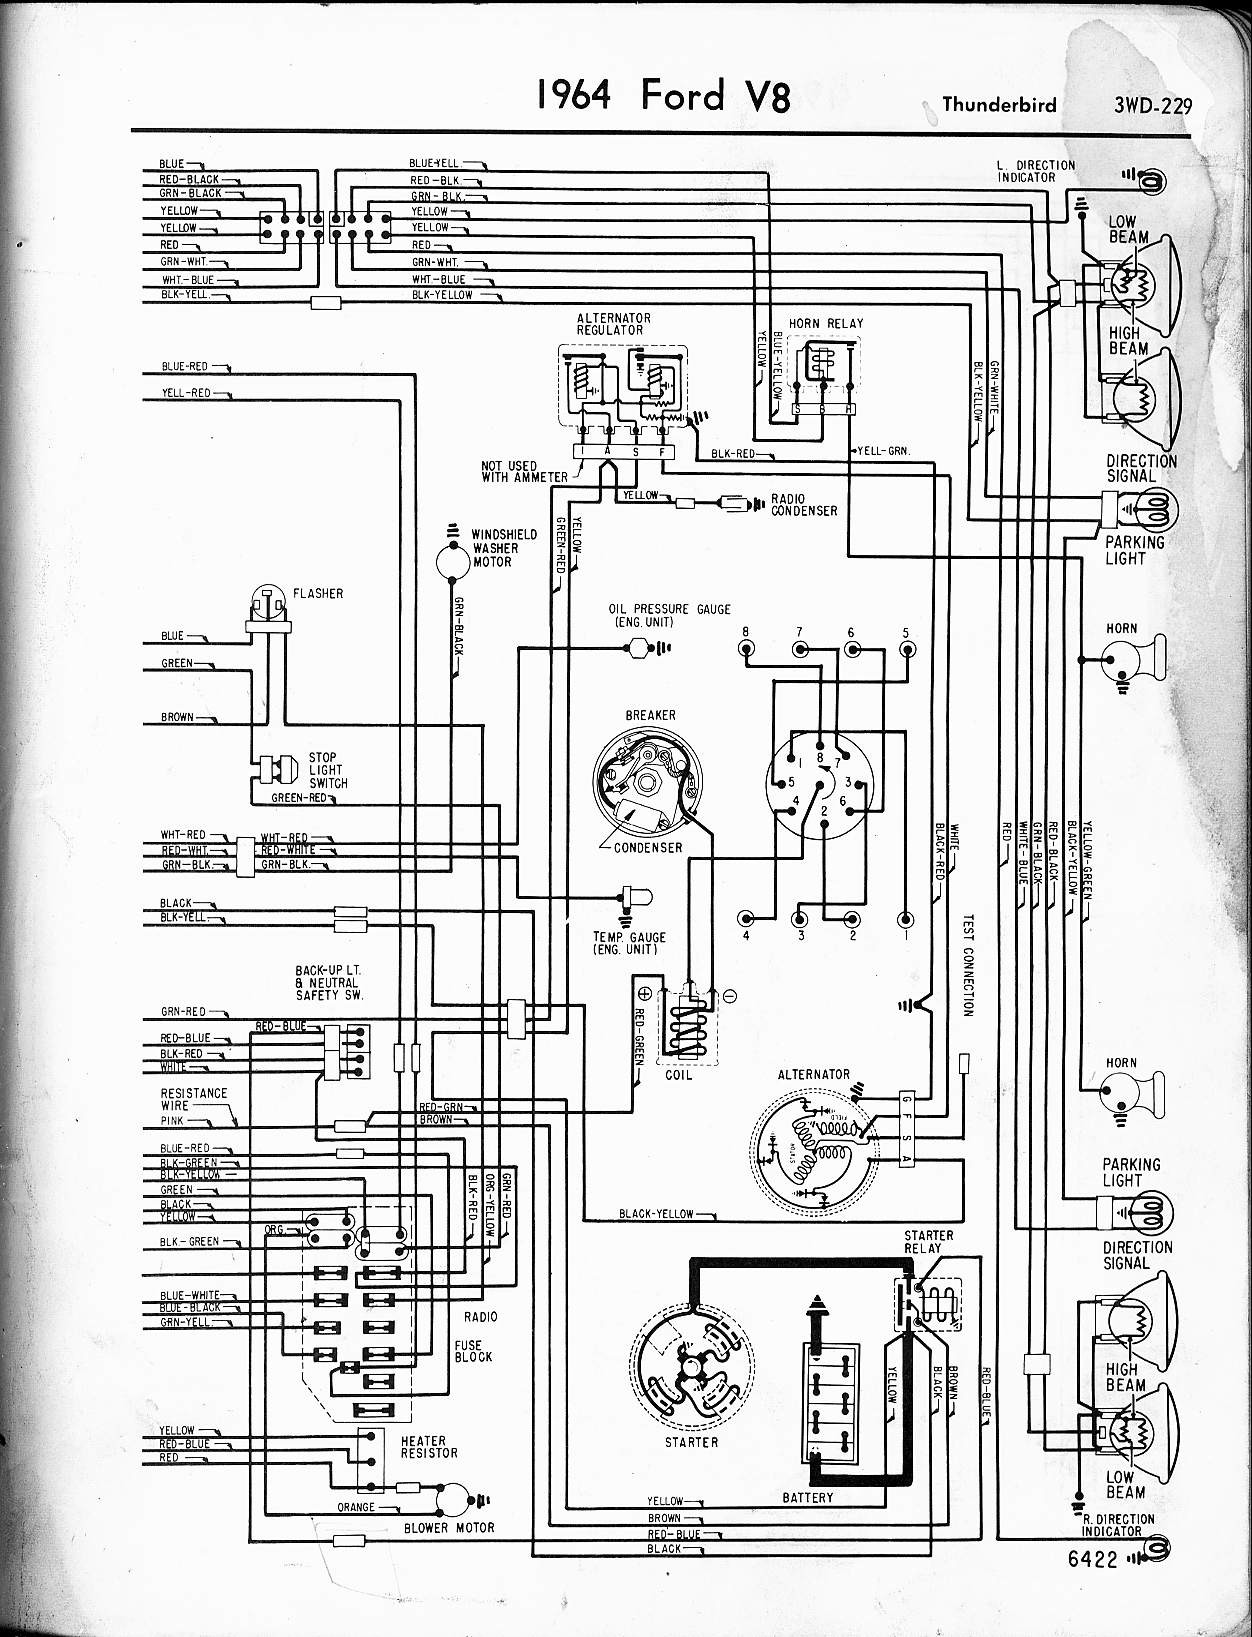 Wiring Diagram for A 1988 Club Car 57 65 ford Wiring Diagrams Of Wiring Diagram for A 1988 Club Car